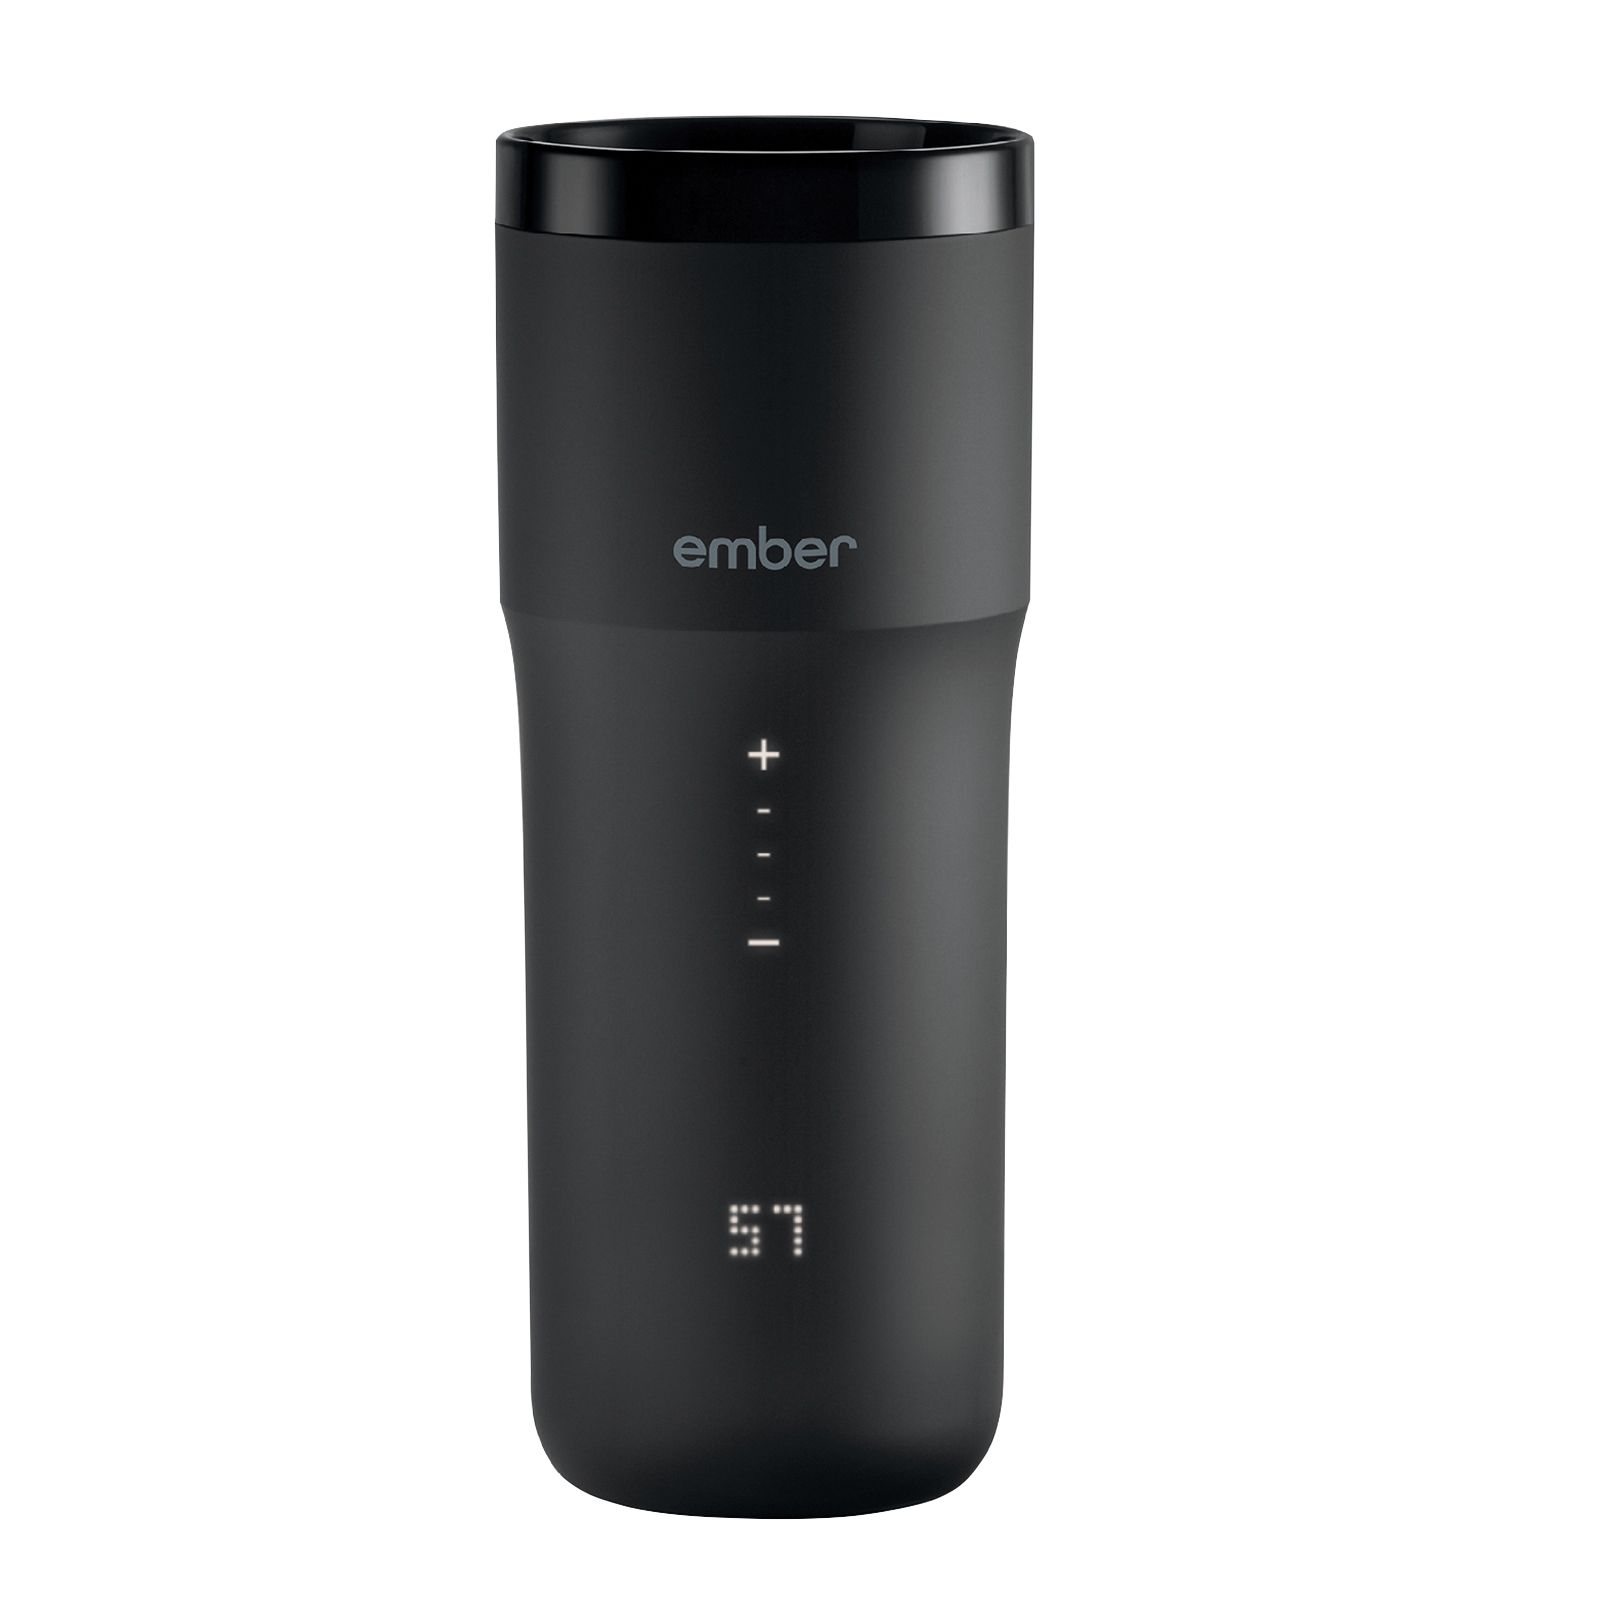 Ember 10 oz. Temperature Control Smart Mug 2 - Black for sale online